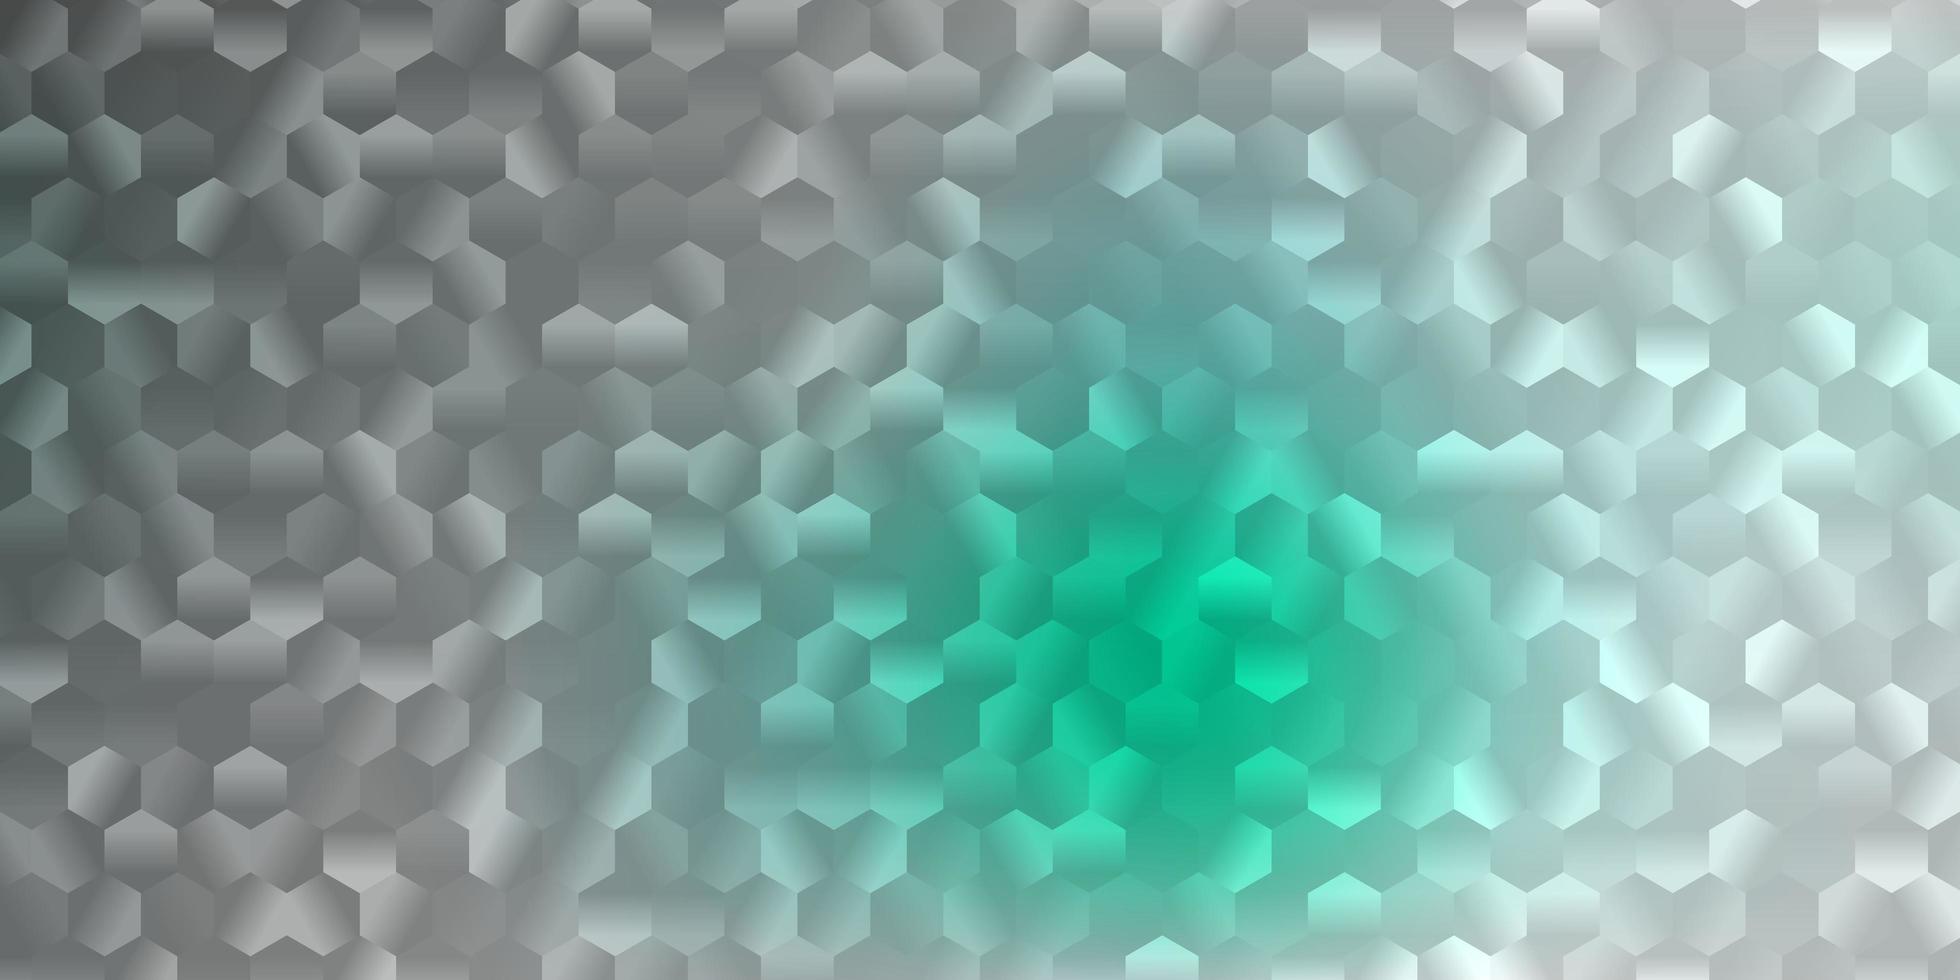 toile de fond de vecteur vert clair avec un lot d'hexagones.